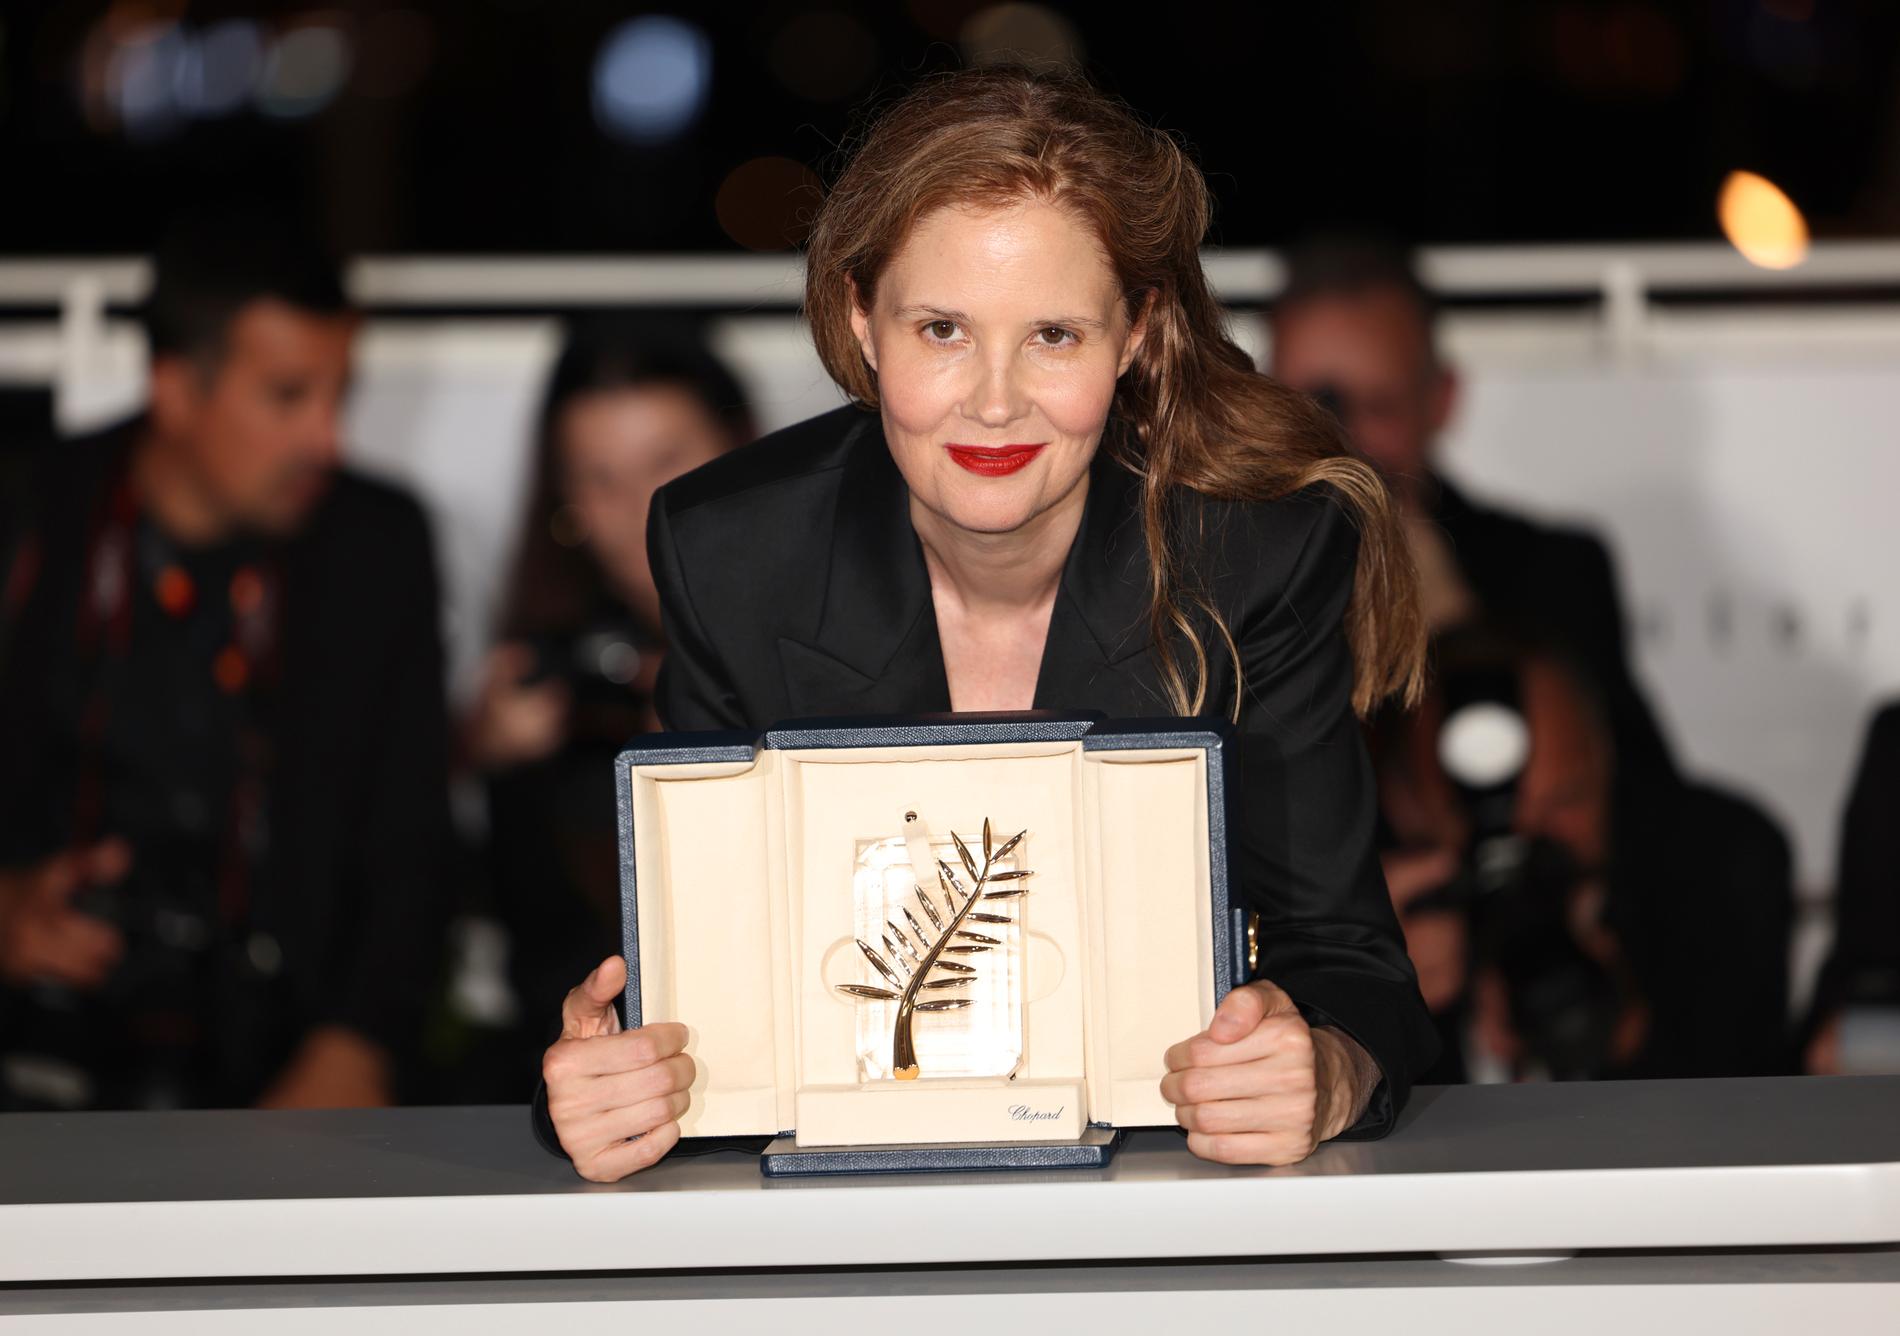 Justine Triet höll ett omdebatterat vinnartal när hon tog emot Guldpalmen i Cannes.